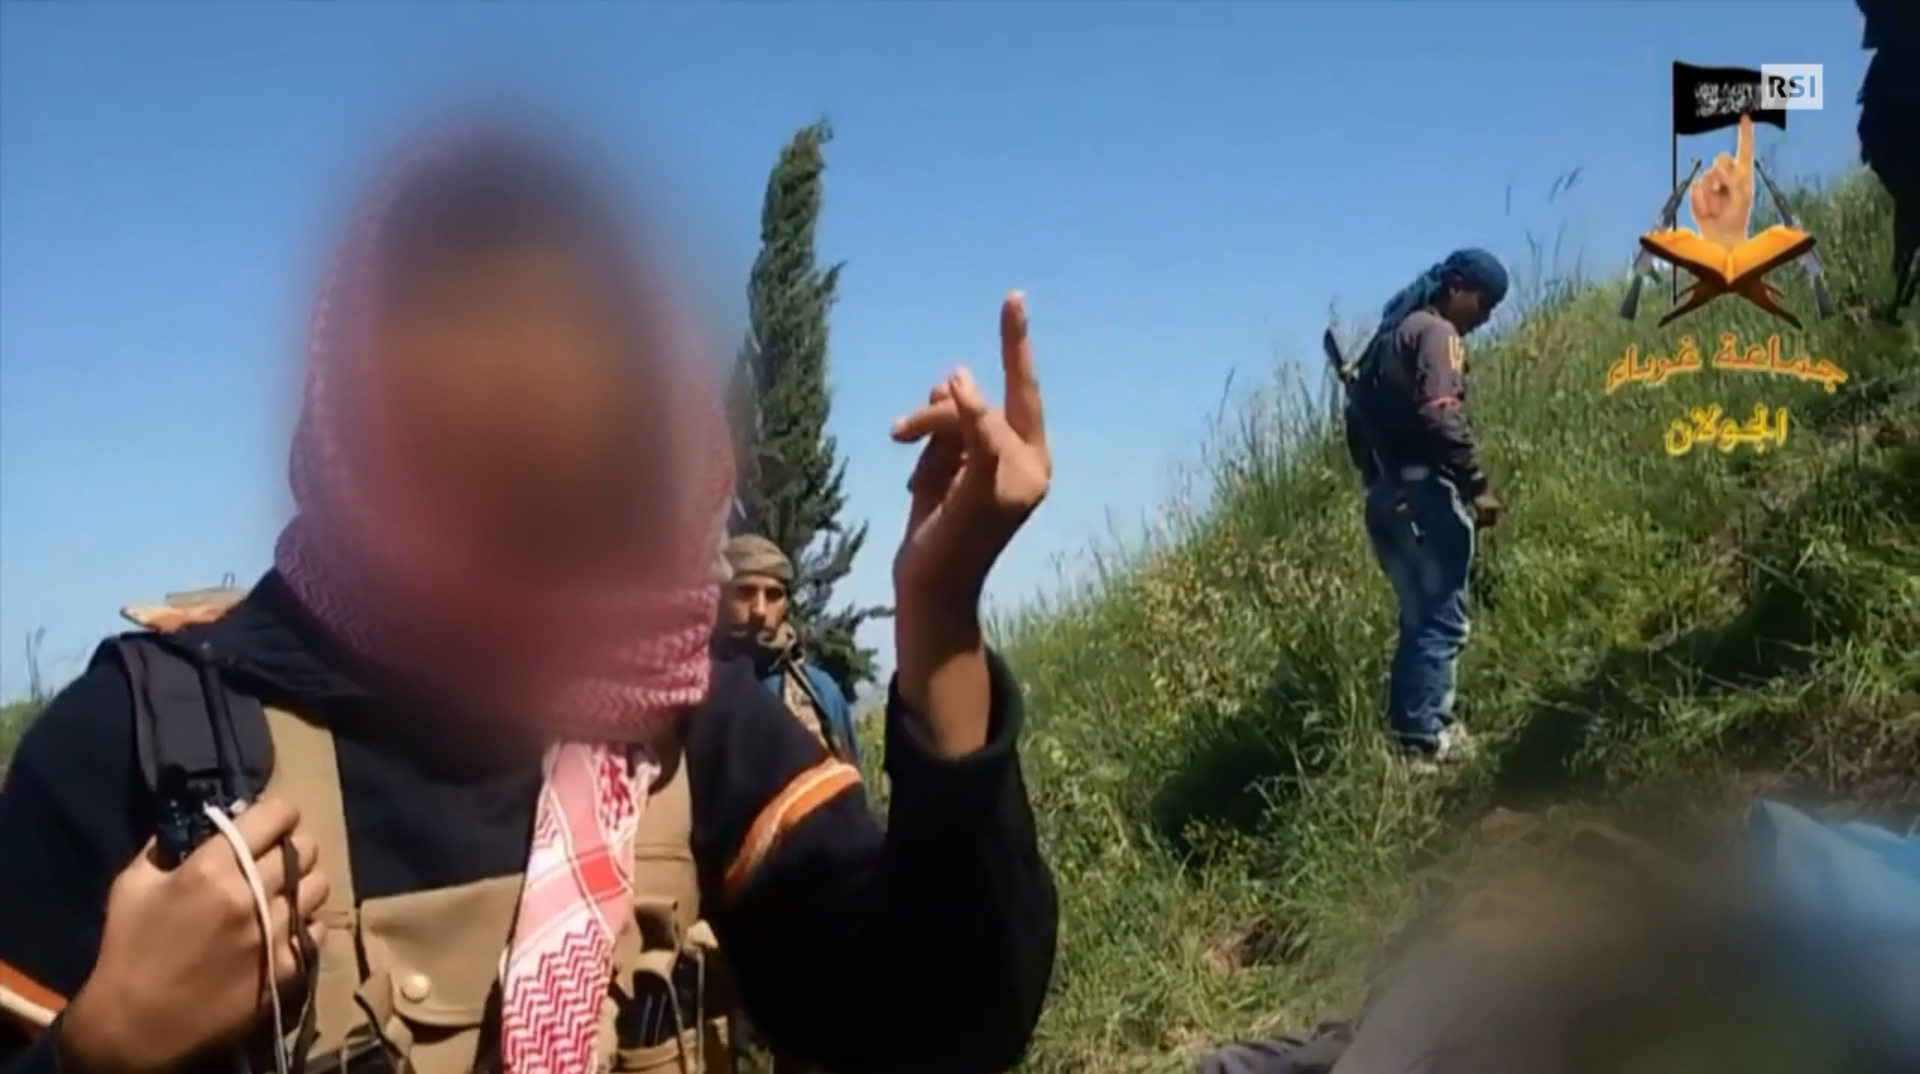 Immagine di un giovane armato (con volto offuscato) in un filmato di propaganda di Al Qaeda